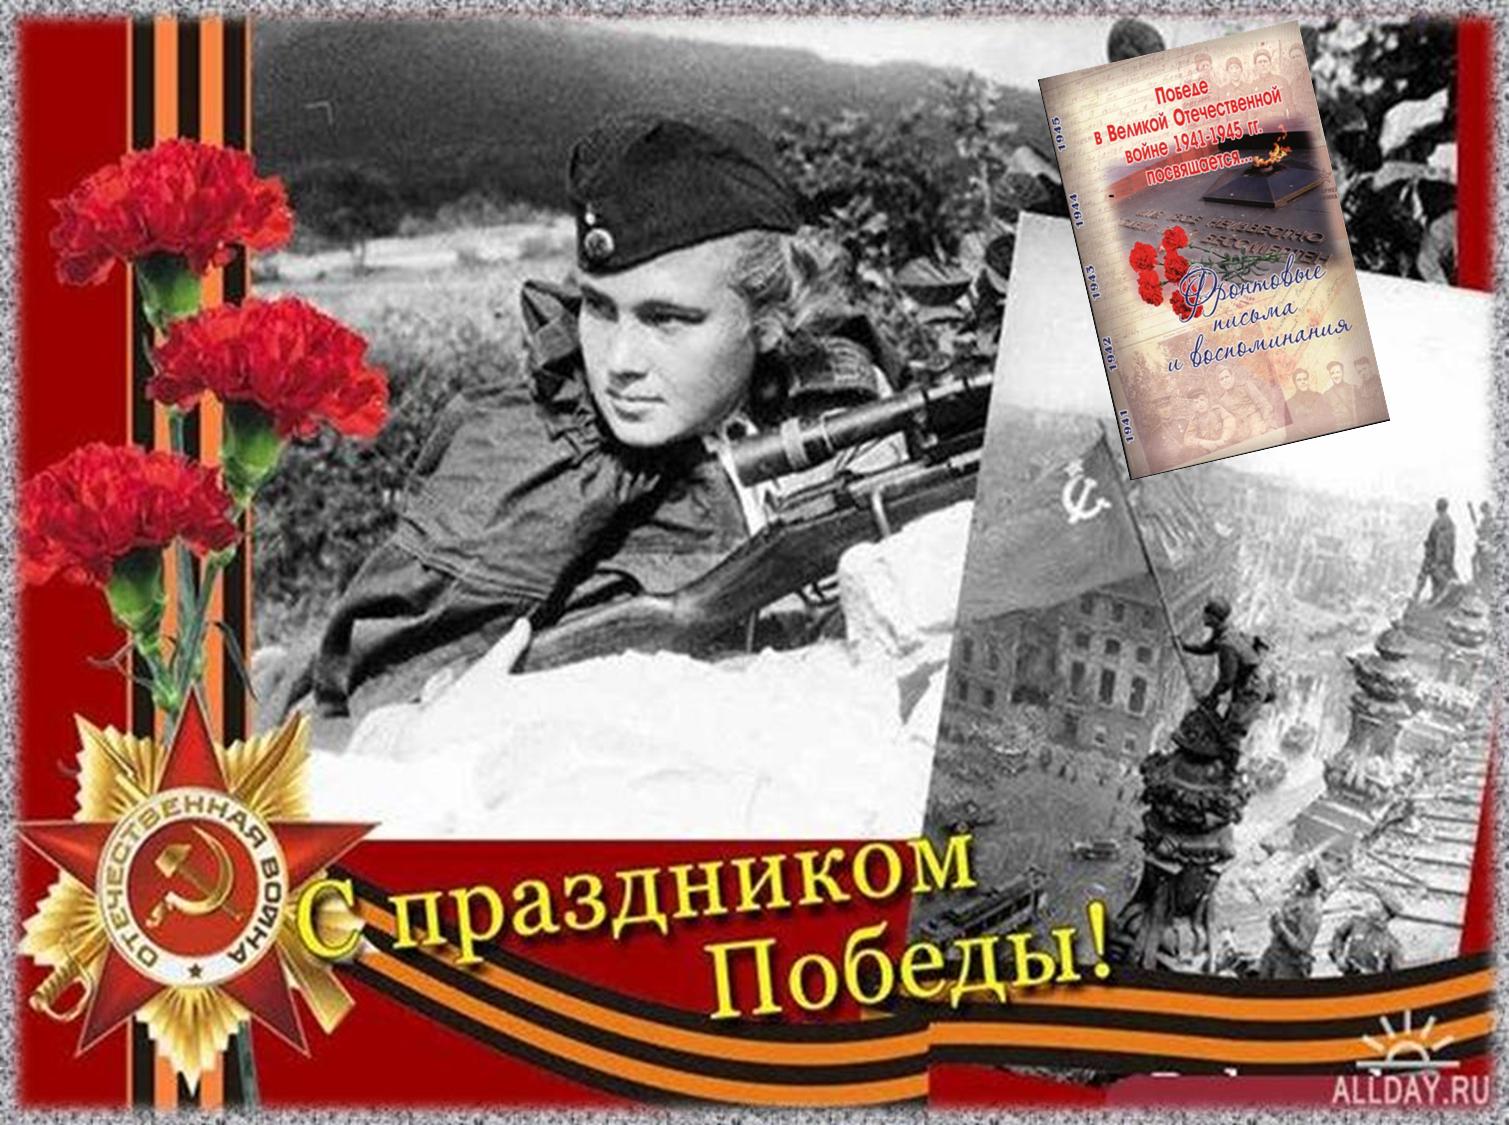 О новых интересных событиях периода Великой Отечественной войны в Хакасии расскажут на заседании краеведов 24 апреля 2015 г.